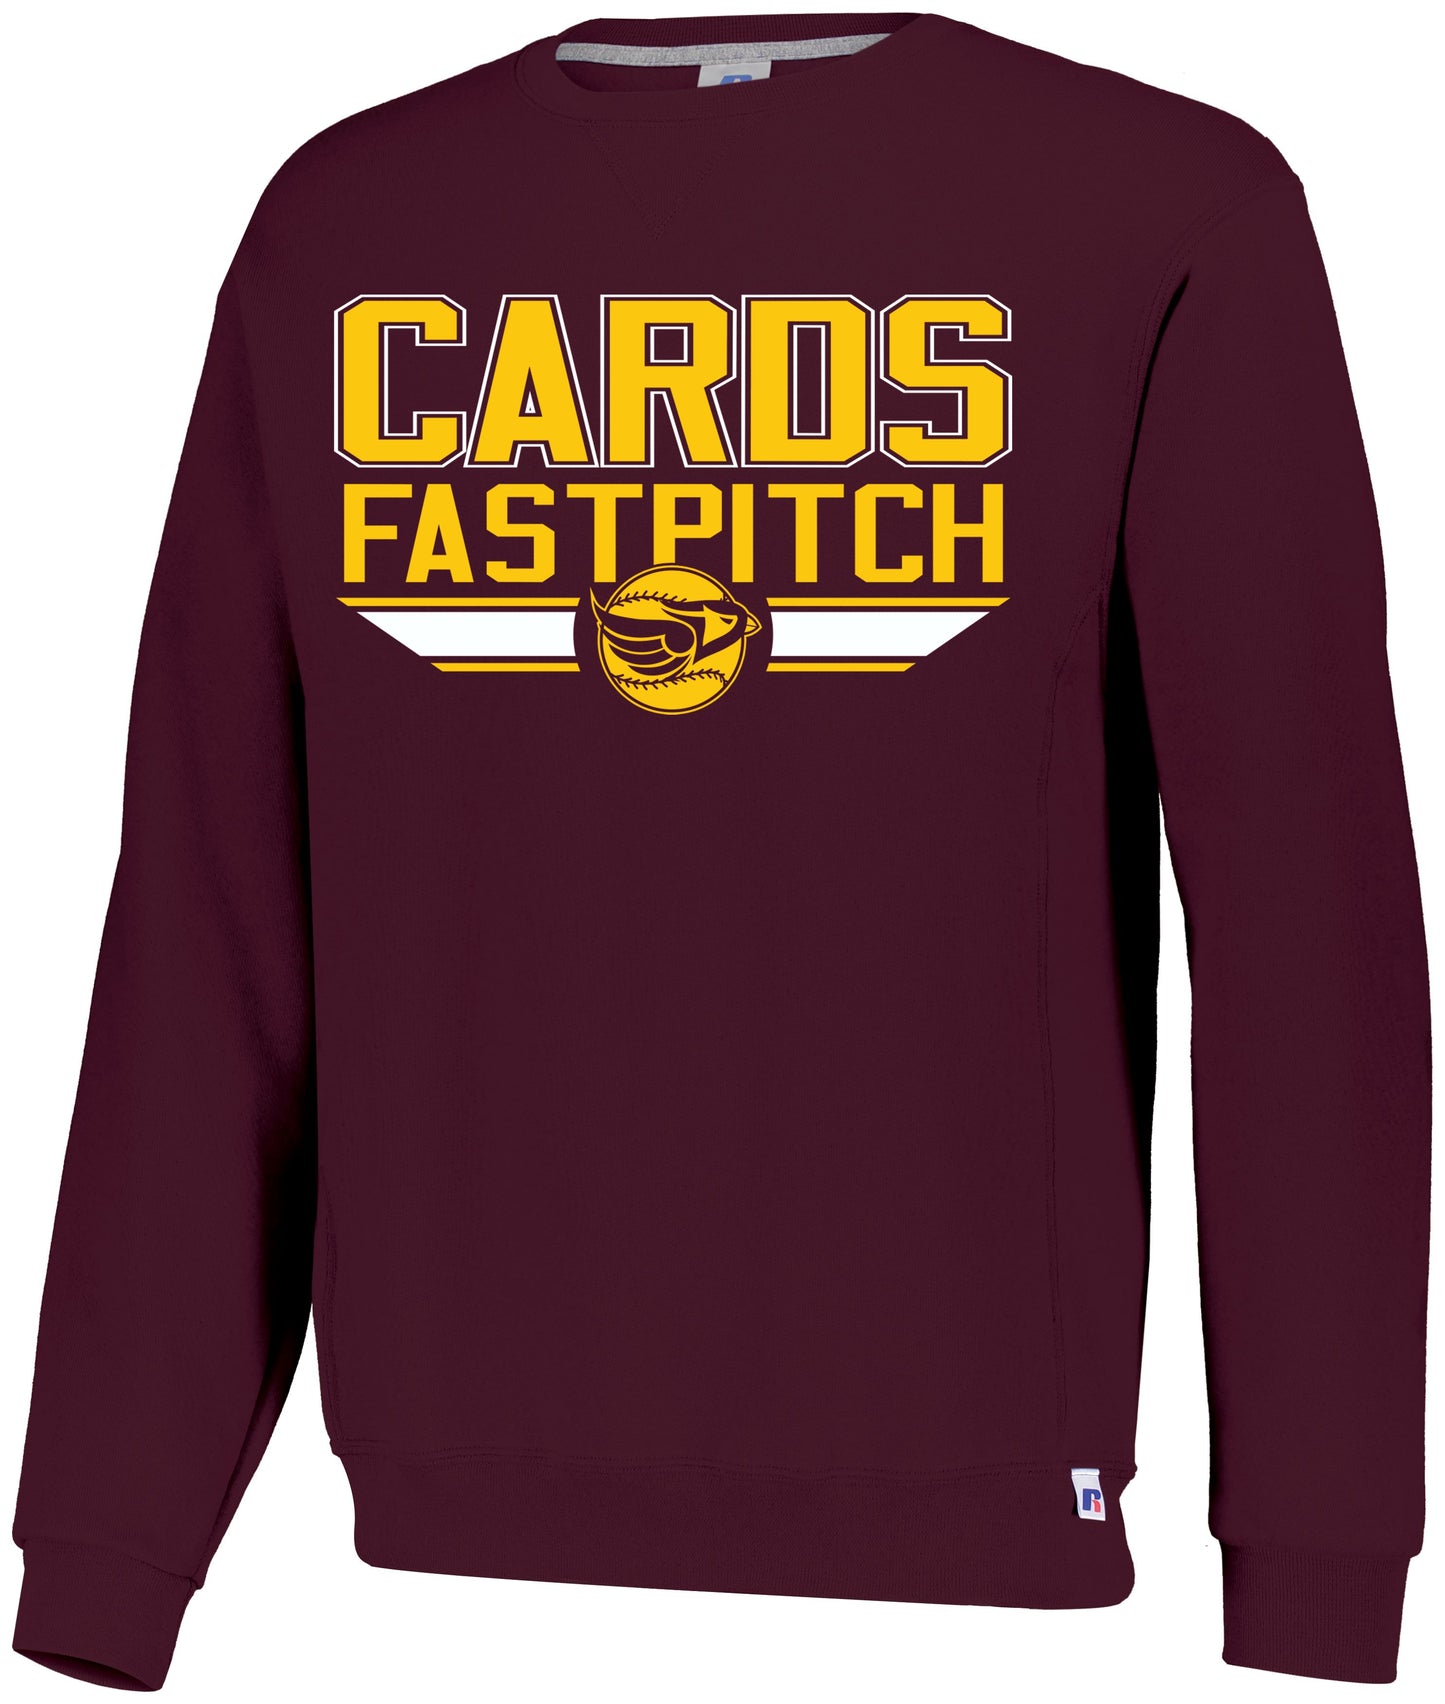 Cards Fastpitch Dri-Power Crew Sweatshirt - Bar Logo